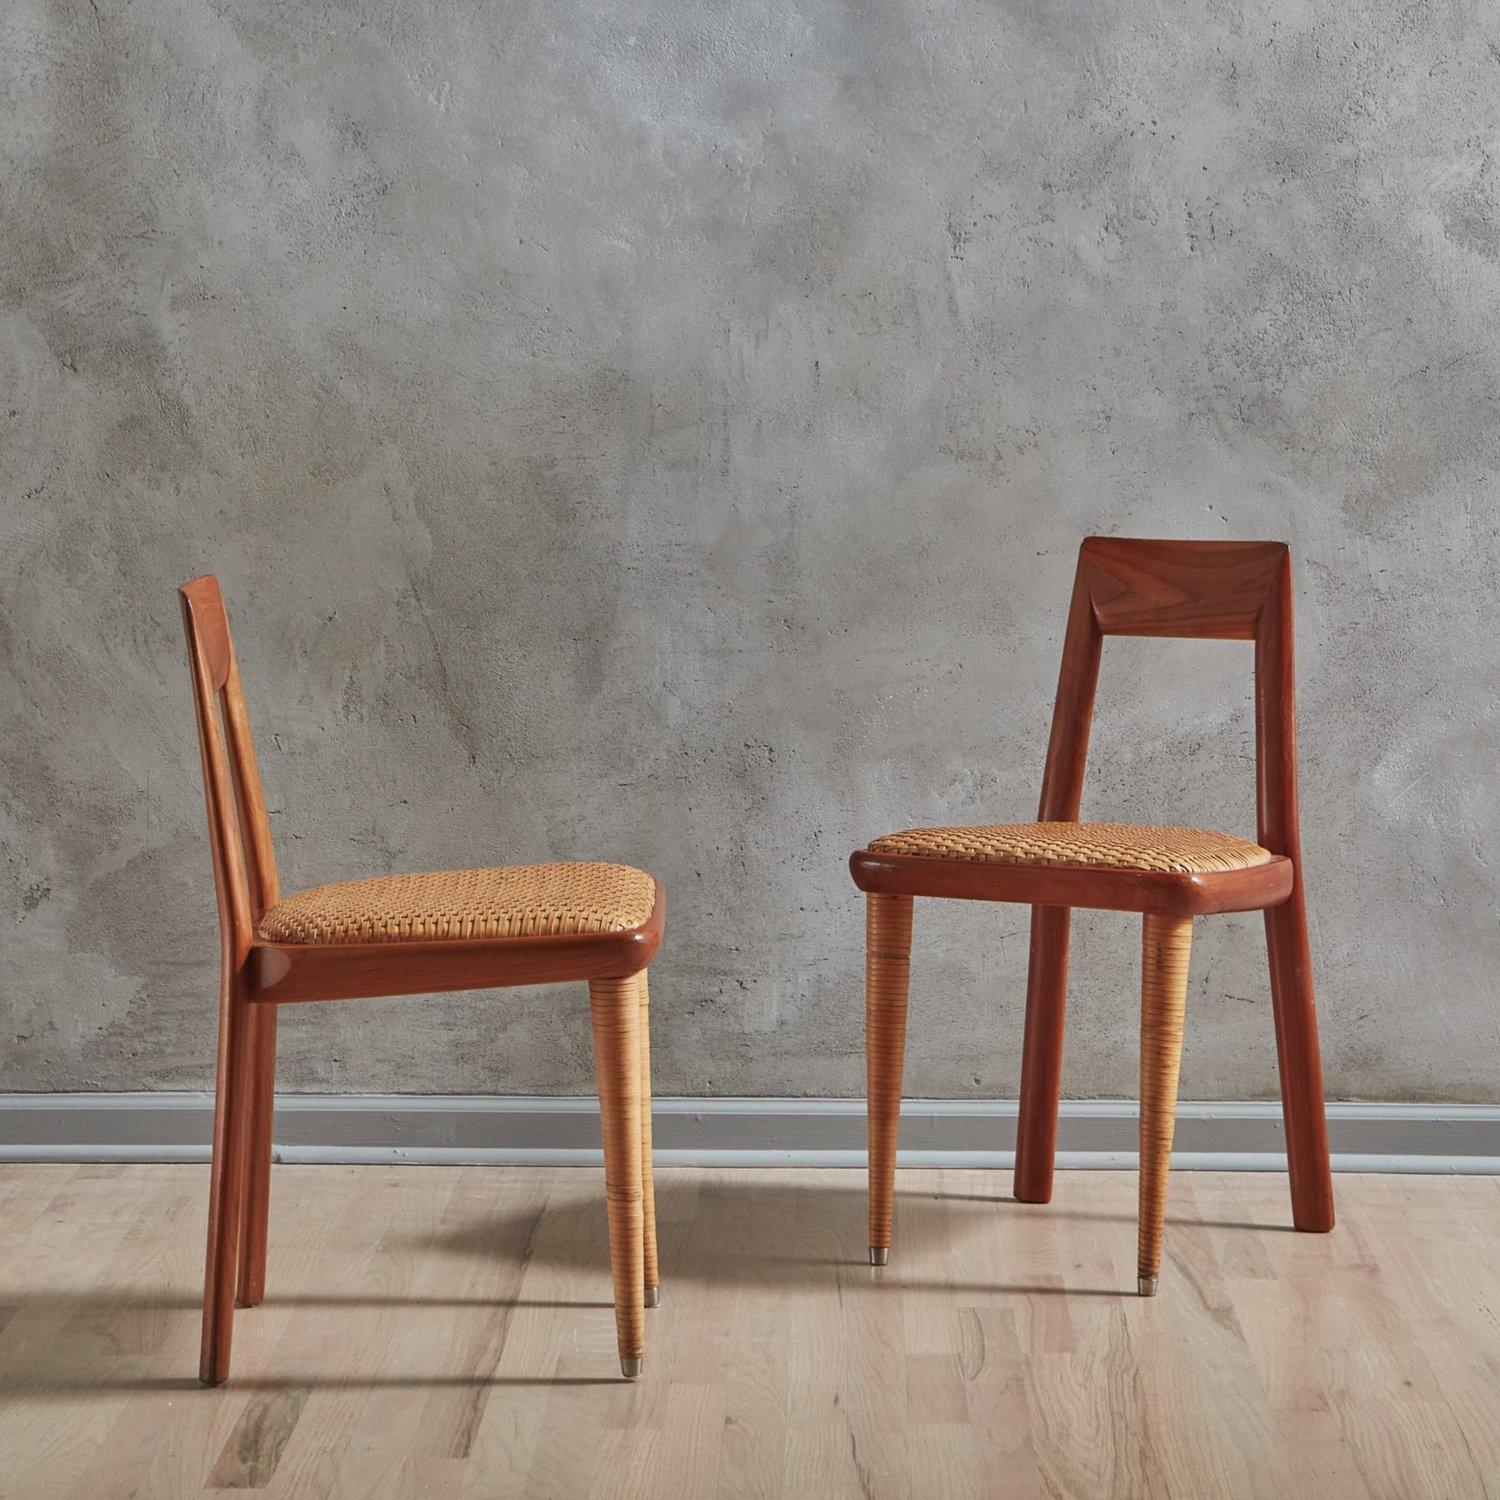 Ein Satz von 8 italienischen Esszimmerstühlen aus der Mitte des Jahrhunderts von Pierantonio Bonacina. Diese Stühle haben einen kantigen Holzrahmen mit schöner Maserung und eine offene Rückenlehne. Sie haben Sitze aus geflochtenem Leder und spitz